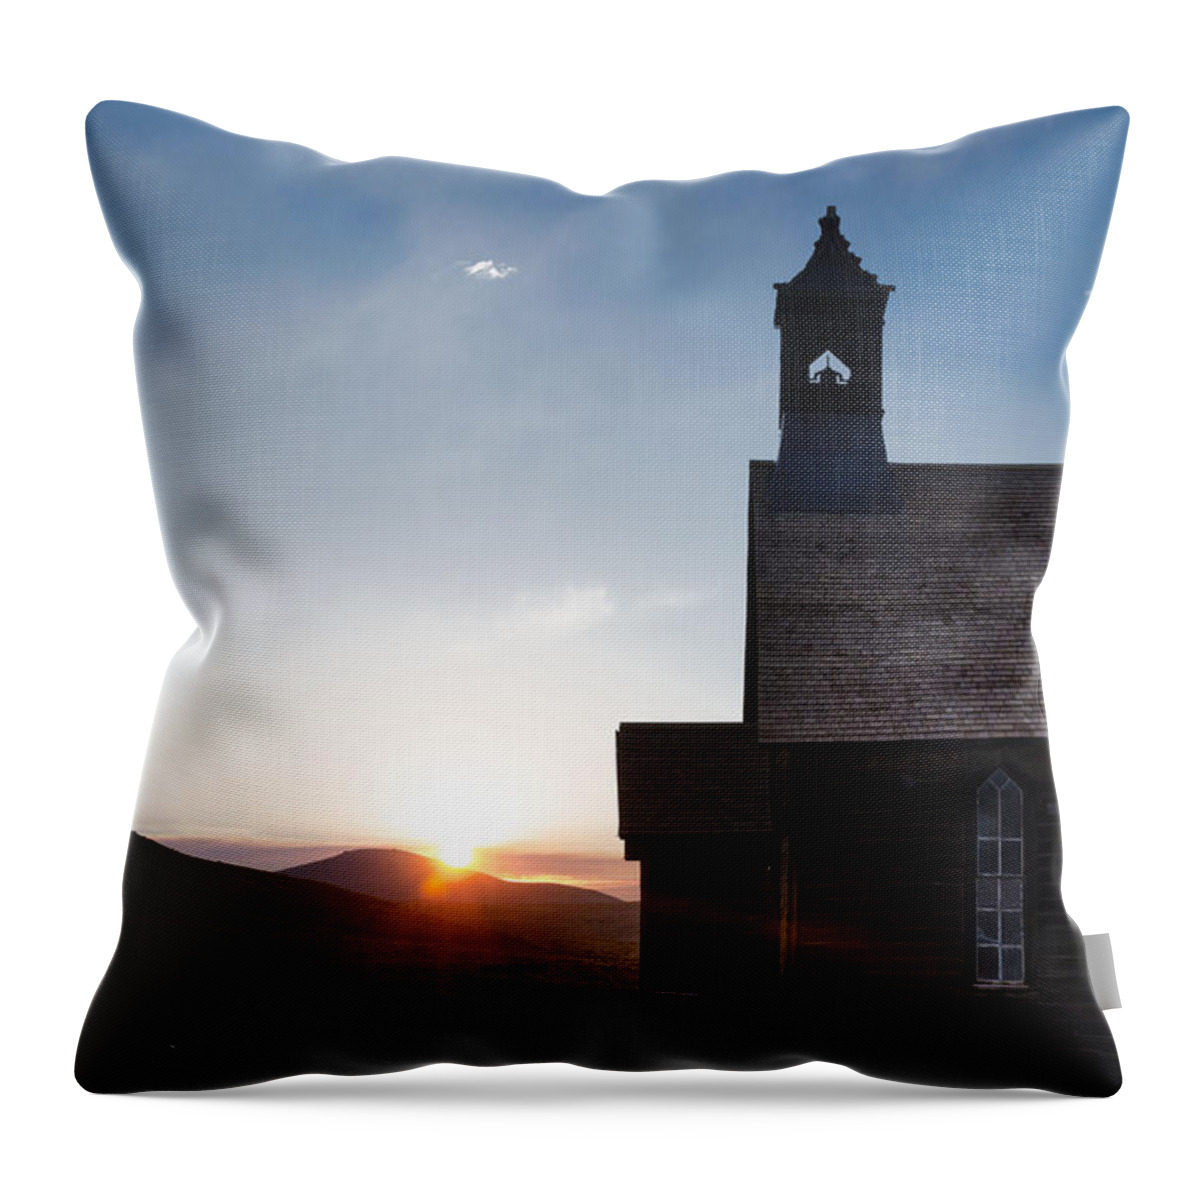 Church Throw Pillow featuring the photograph Desert Church by Janet Kopper